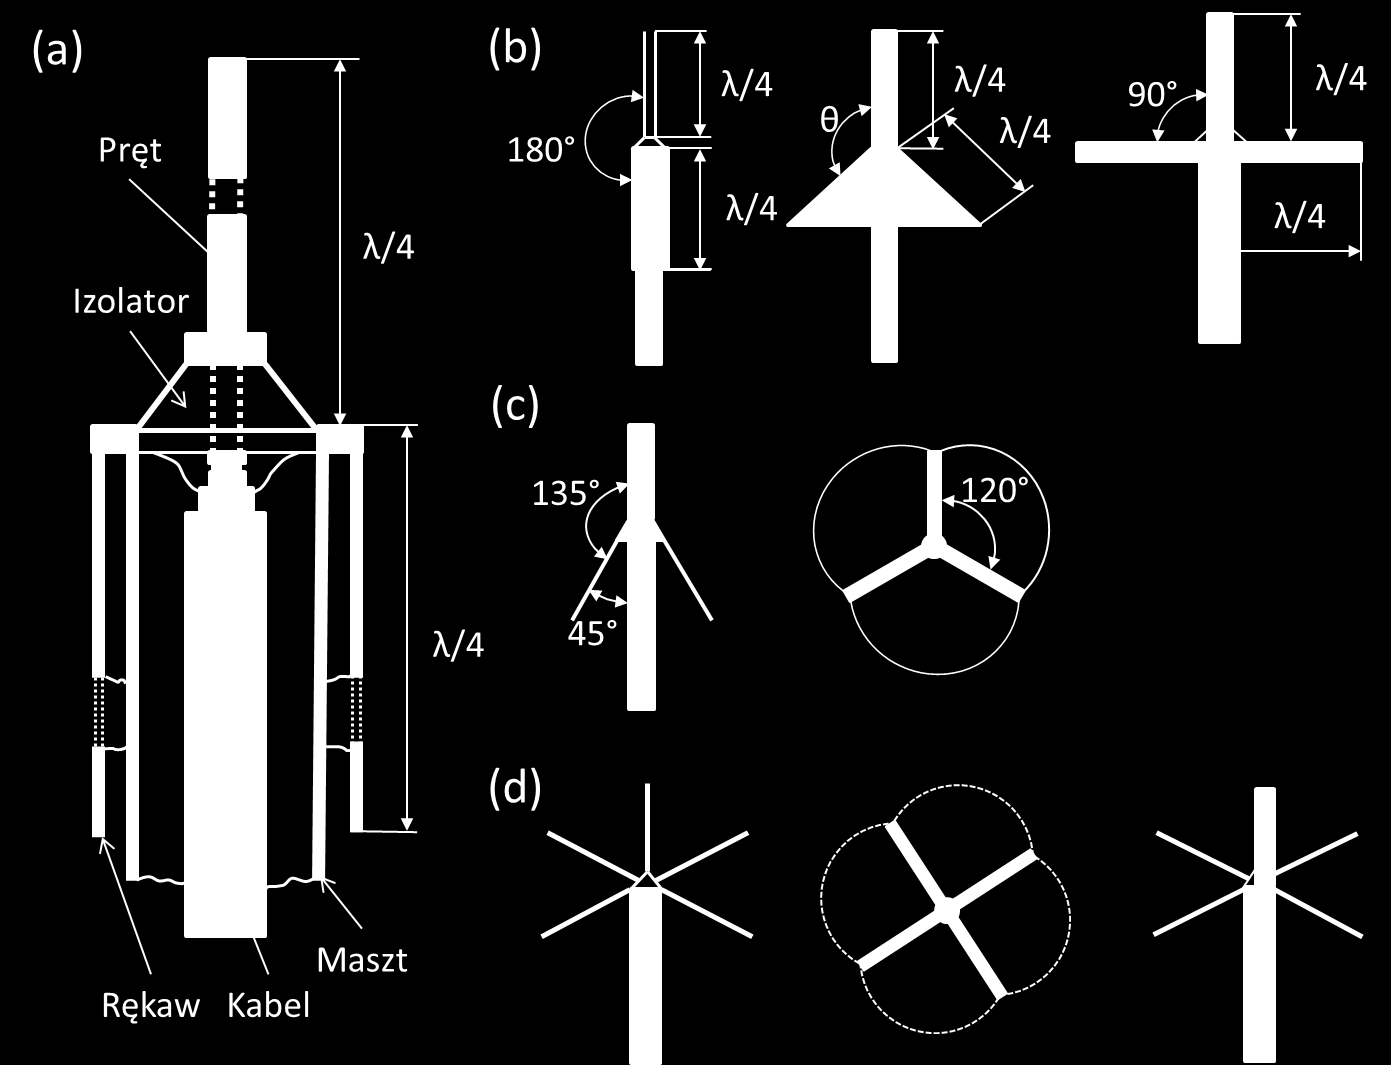 Poprawienie parametrów anten prętowych uzyskać można po przez zwiększenie długości części pionowej anteny, co korzystnie zmienia na wielkość listka nad horyzontem.